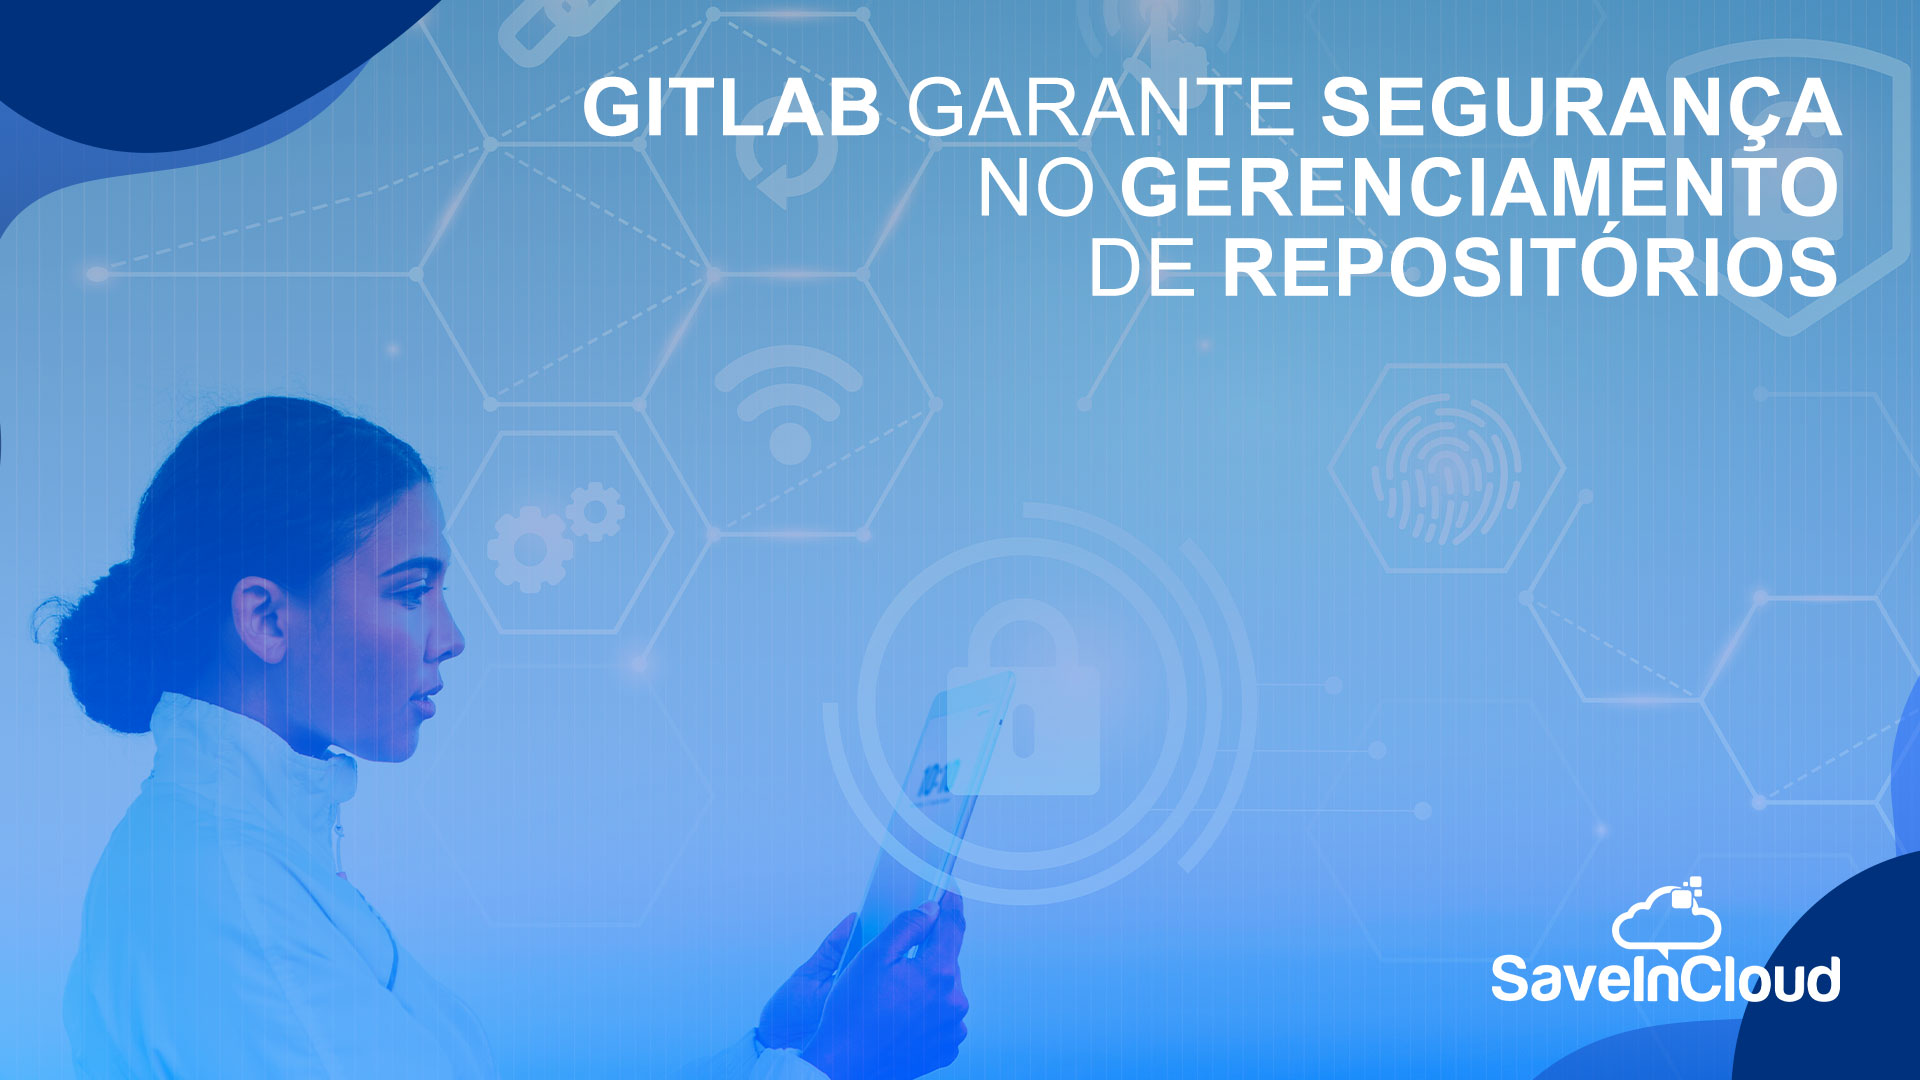 GitLab garante segurança no gerenciamento de repositórios